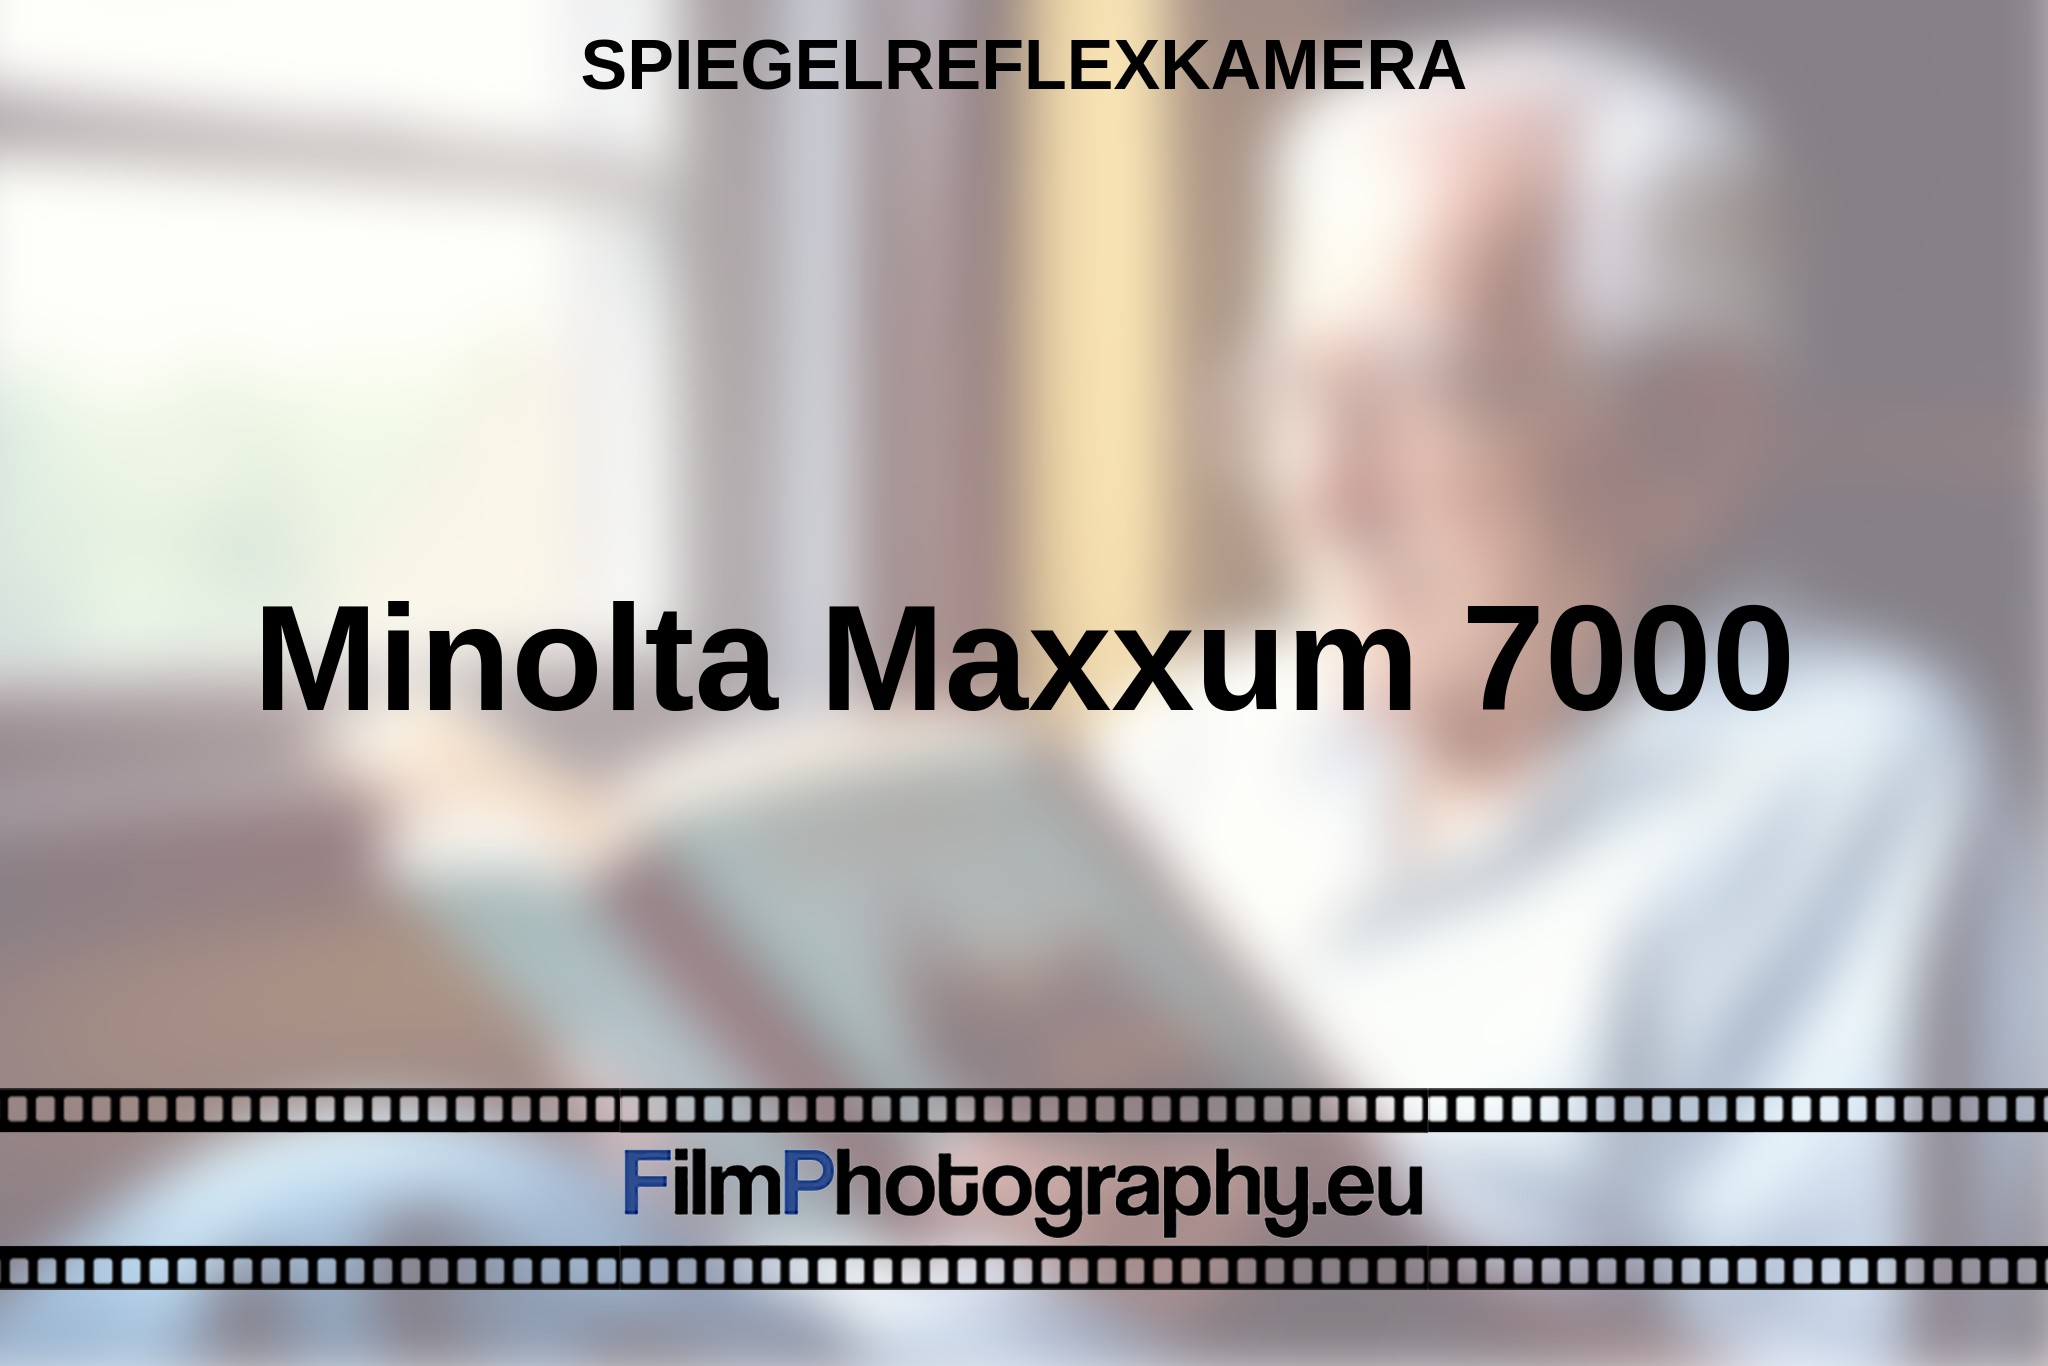 minolta-maxxum-7000-spiegelreflexkamera-bnv.jpg